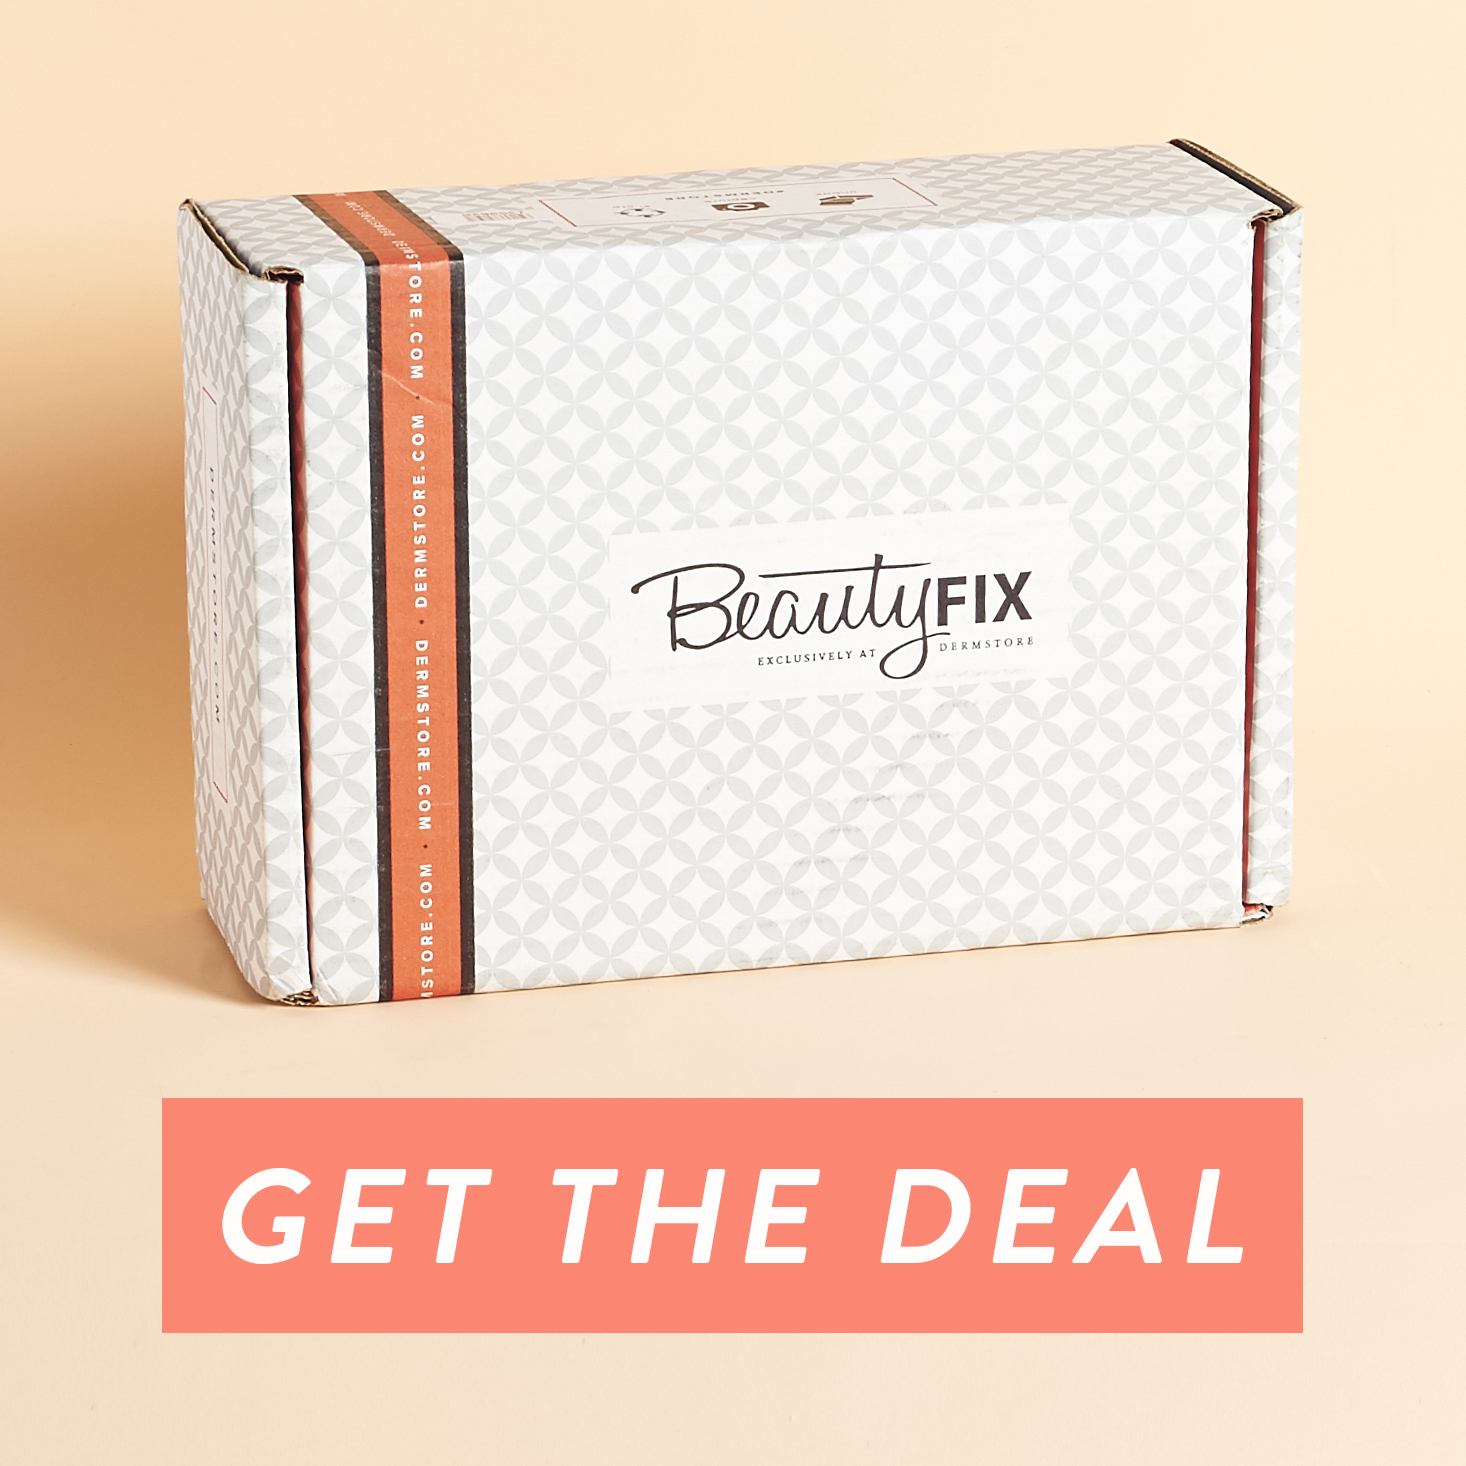 BeautyFIX – Better Than Black Friday Deal!